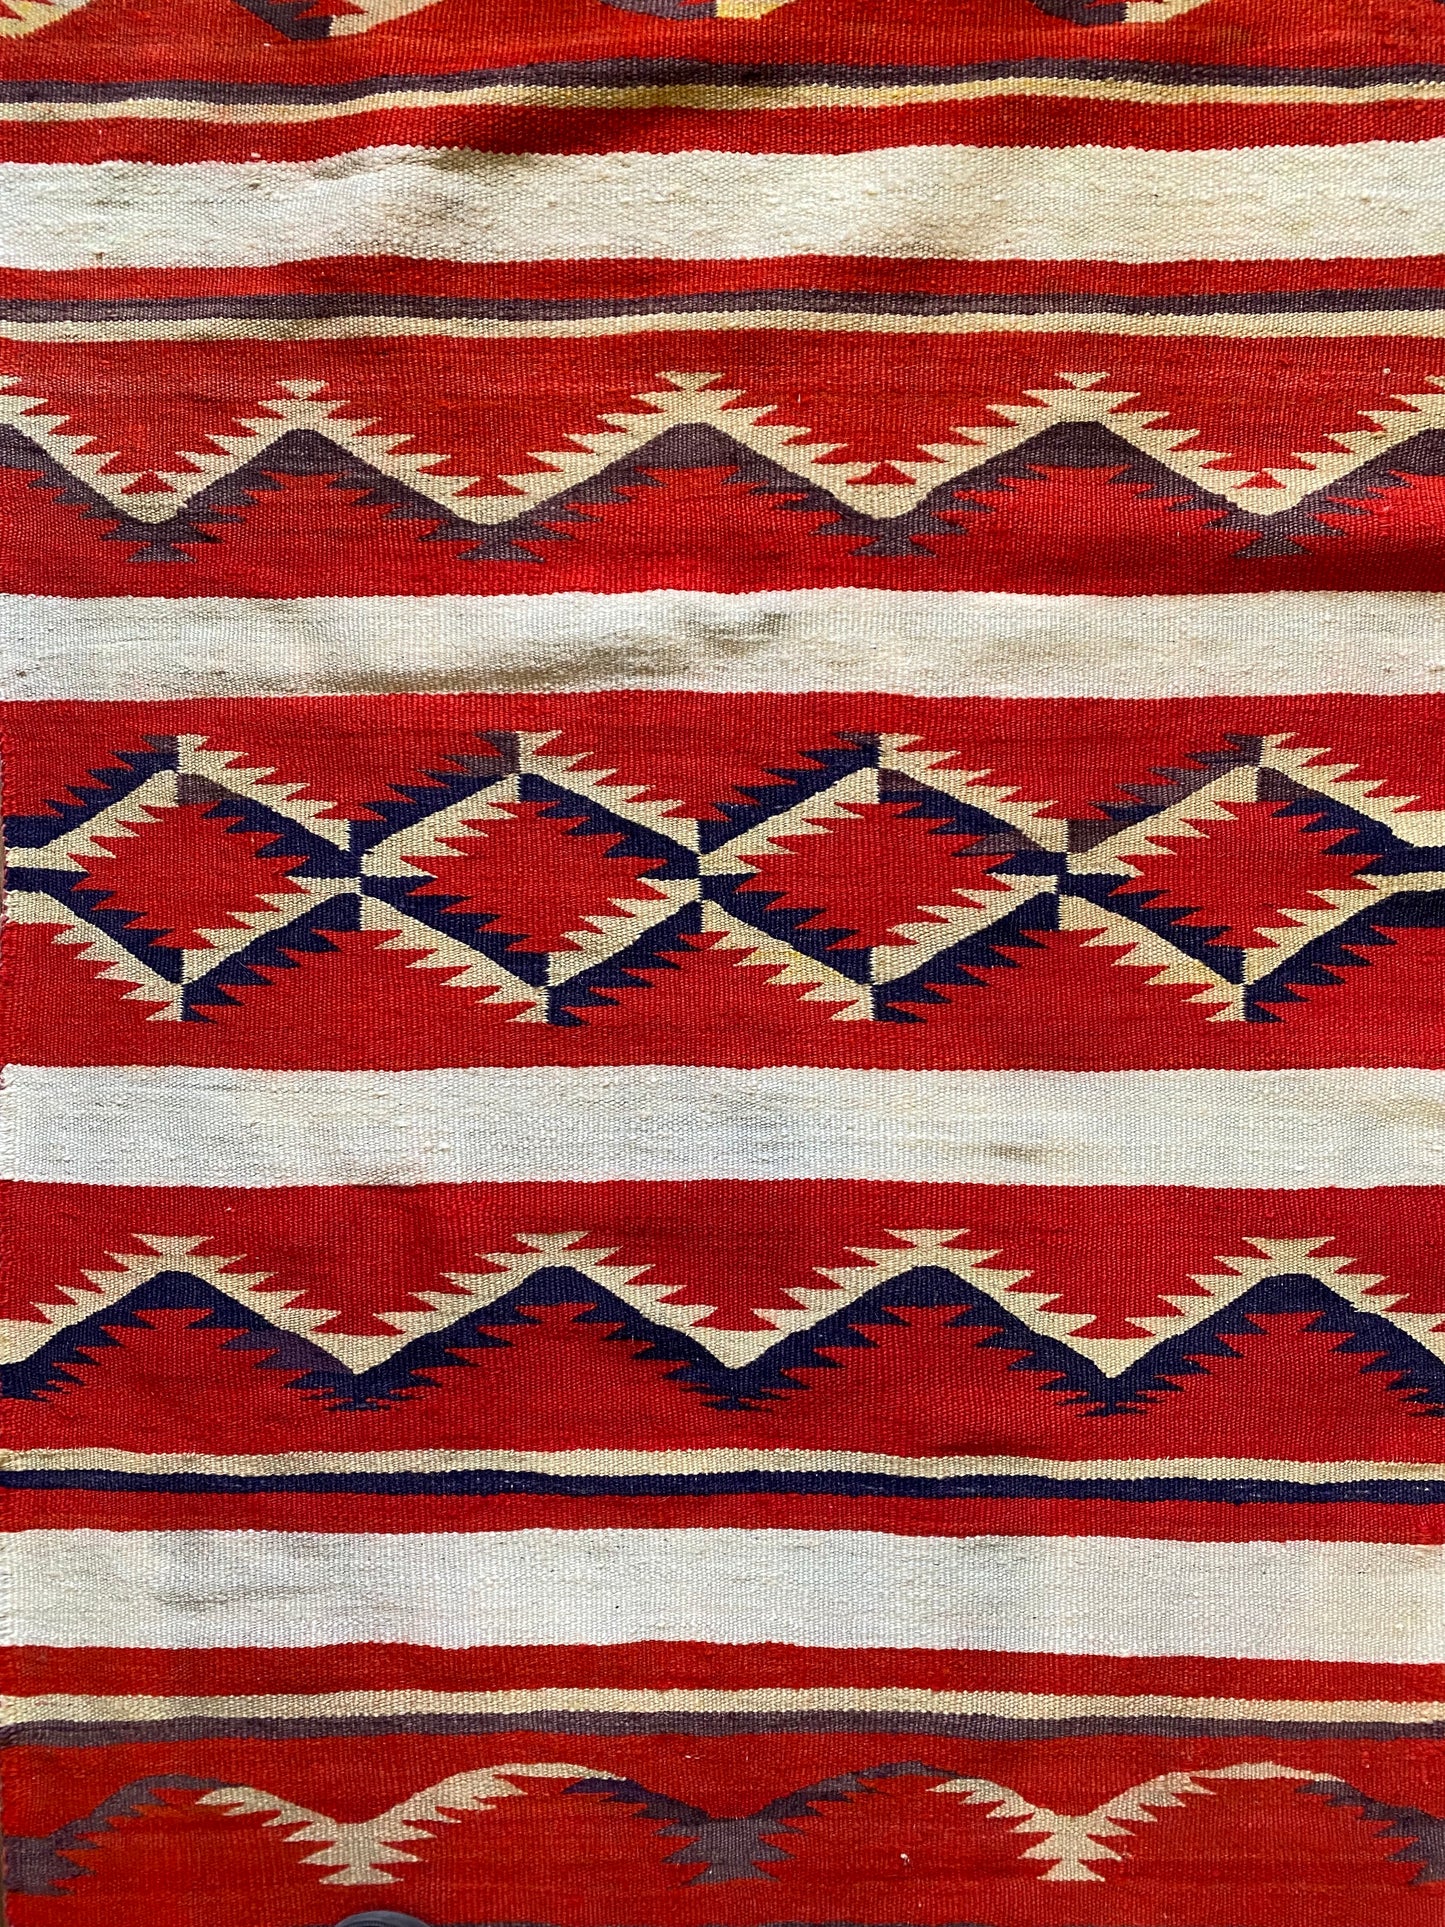 Antique Navajo Germantown Child's Blanket Weaving, navajo rug for sale, authentic navajo weaving, telluride furnishings, telluride art gallery